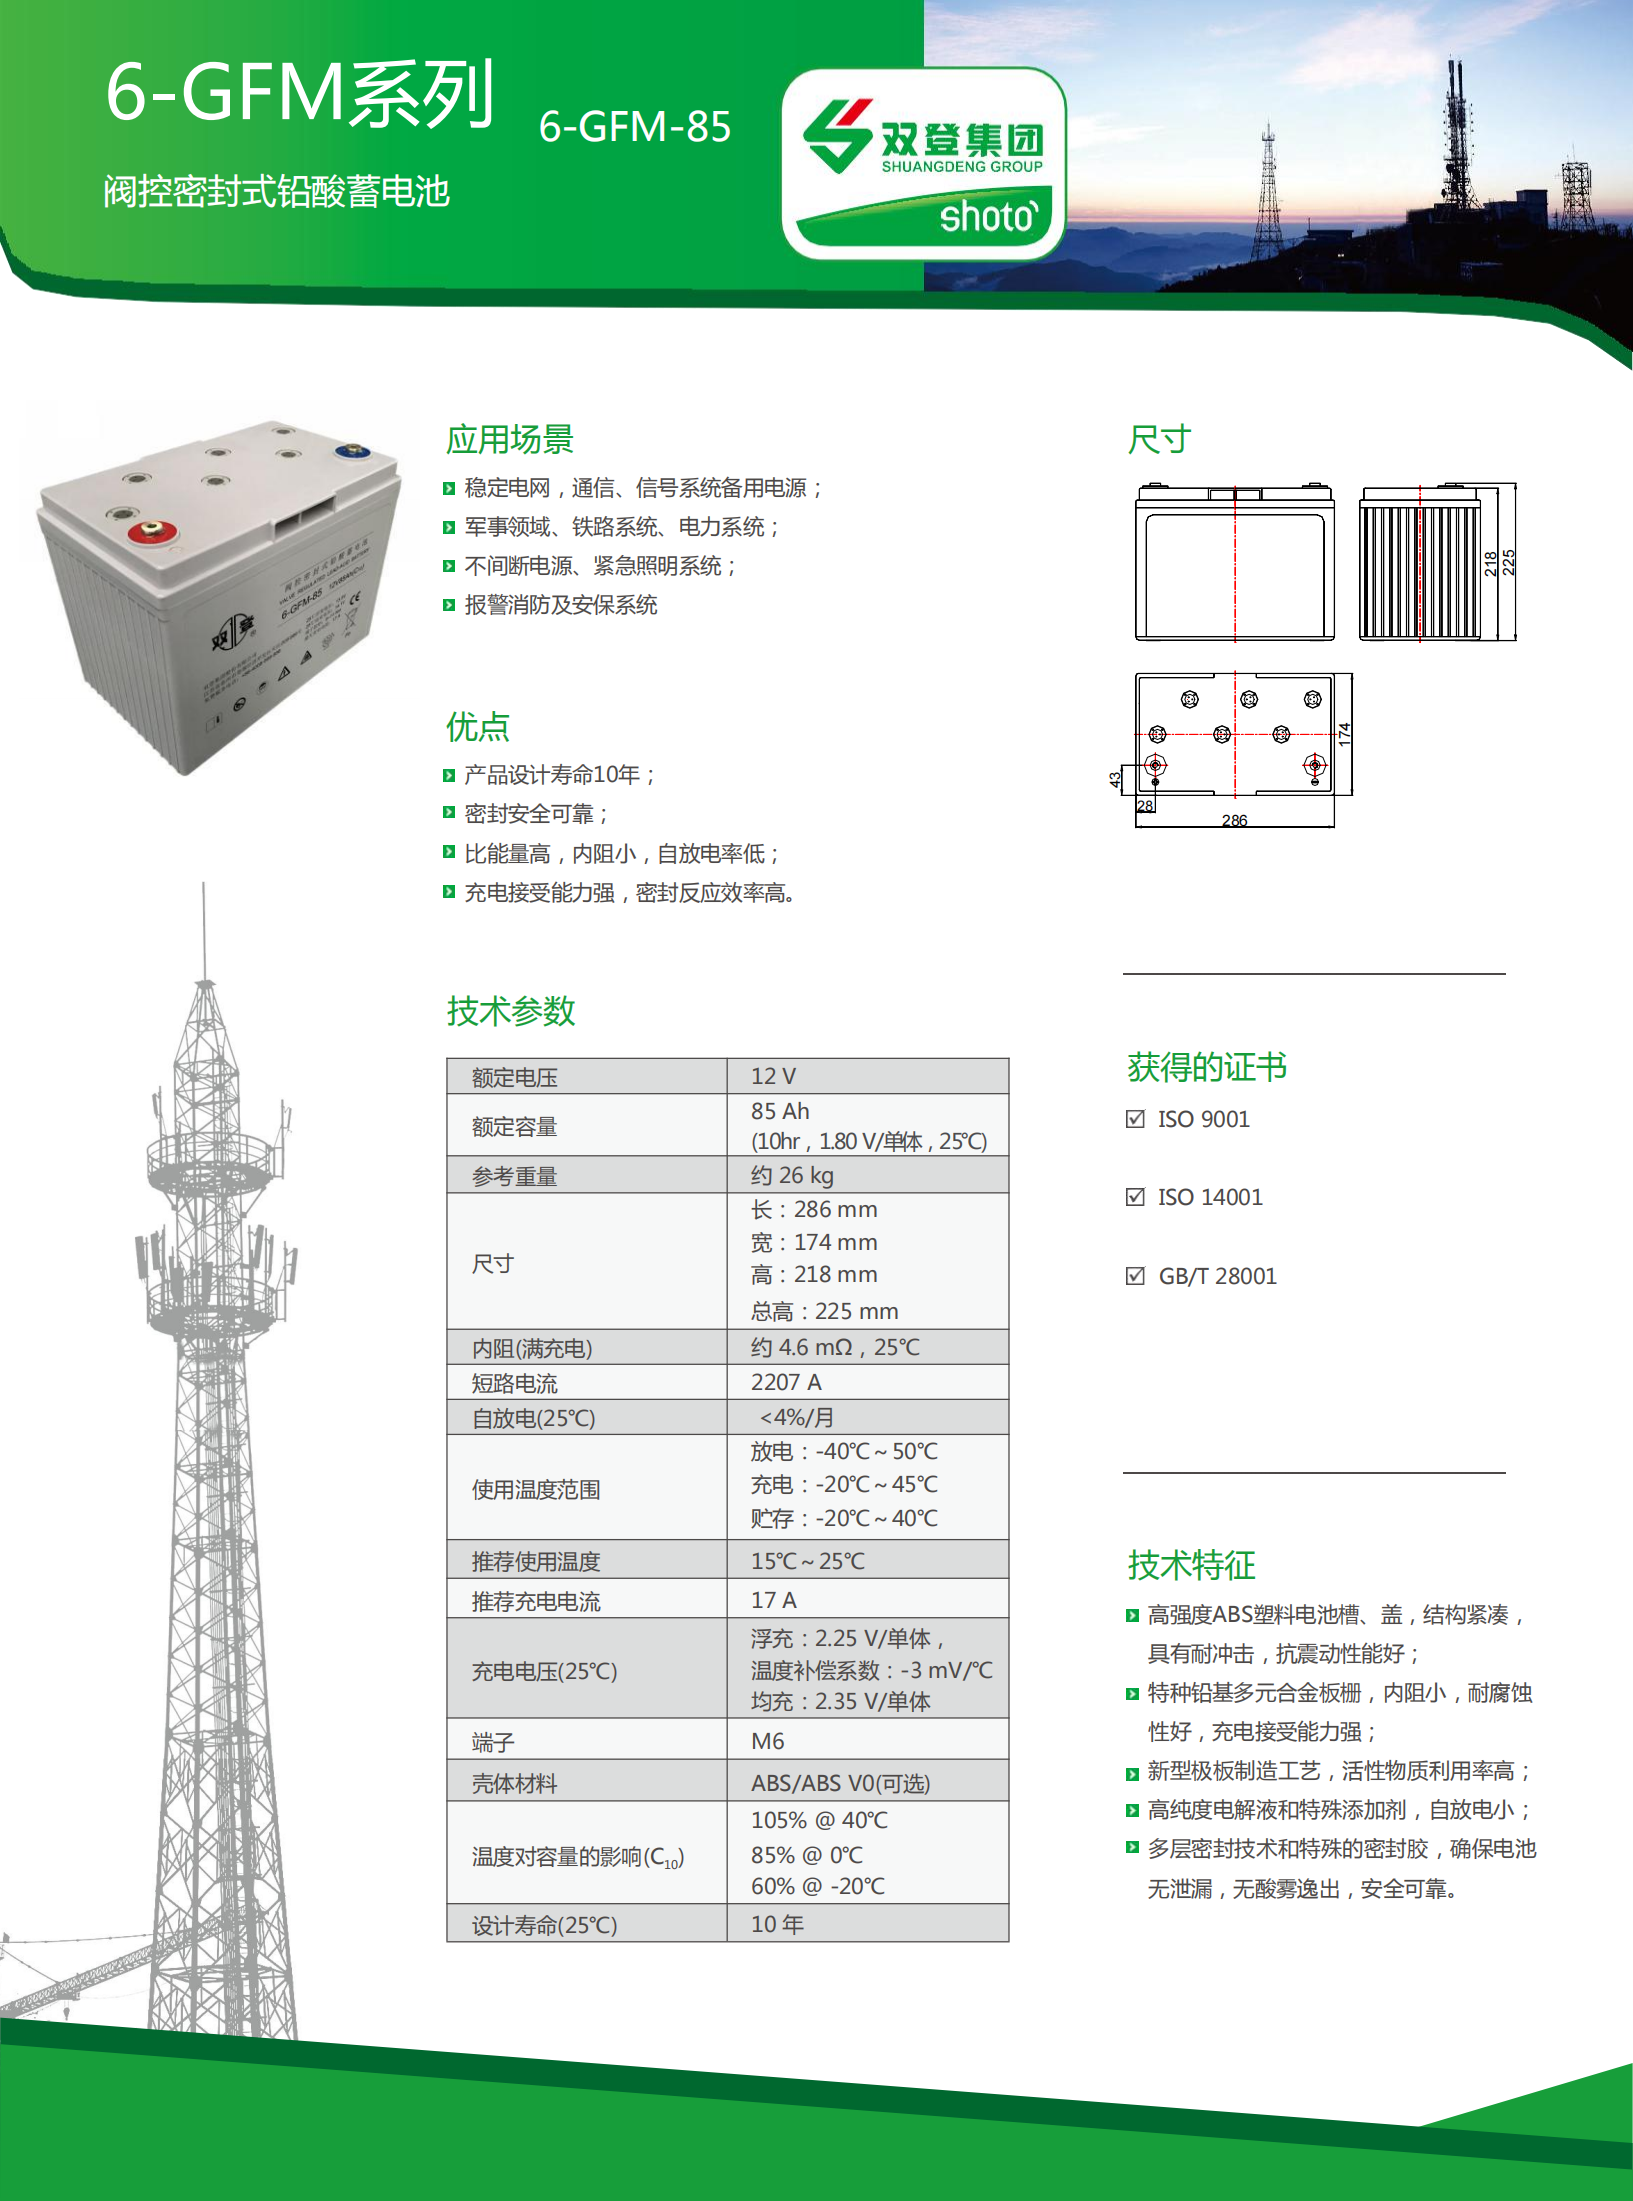 6-GFM-85(中文版) (1)_00.png